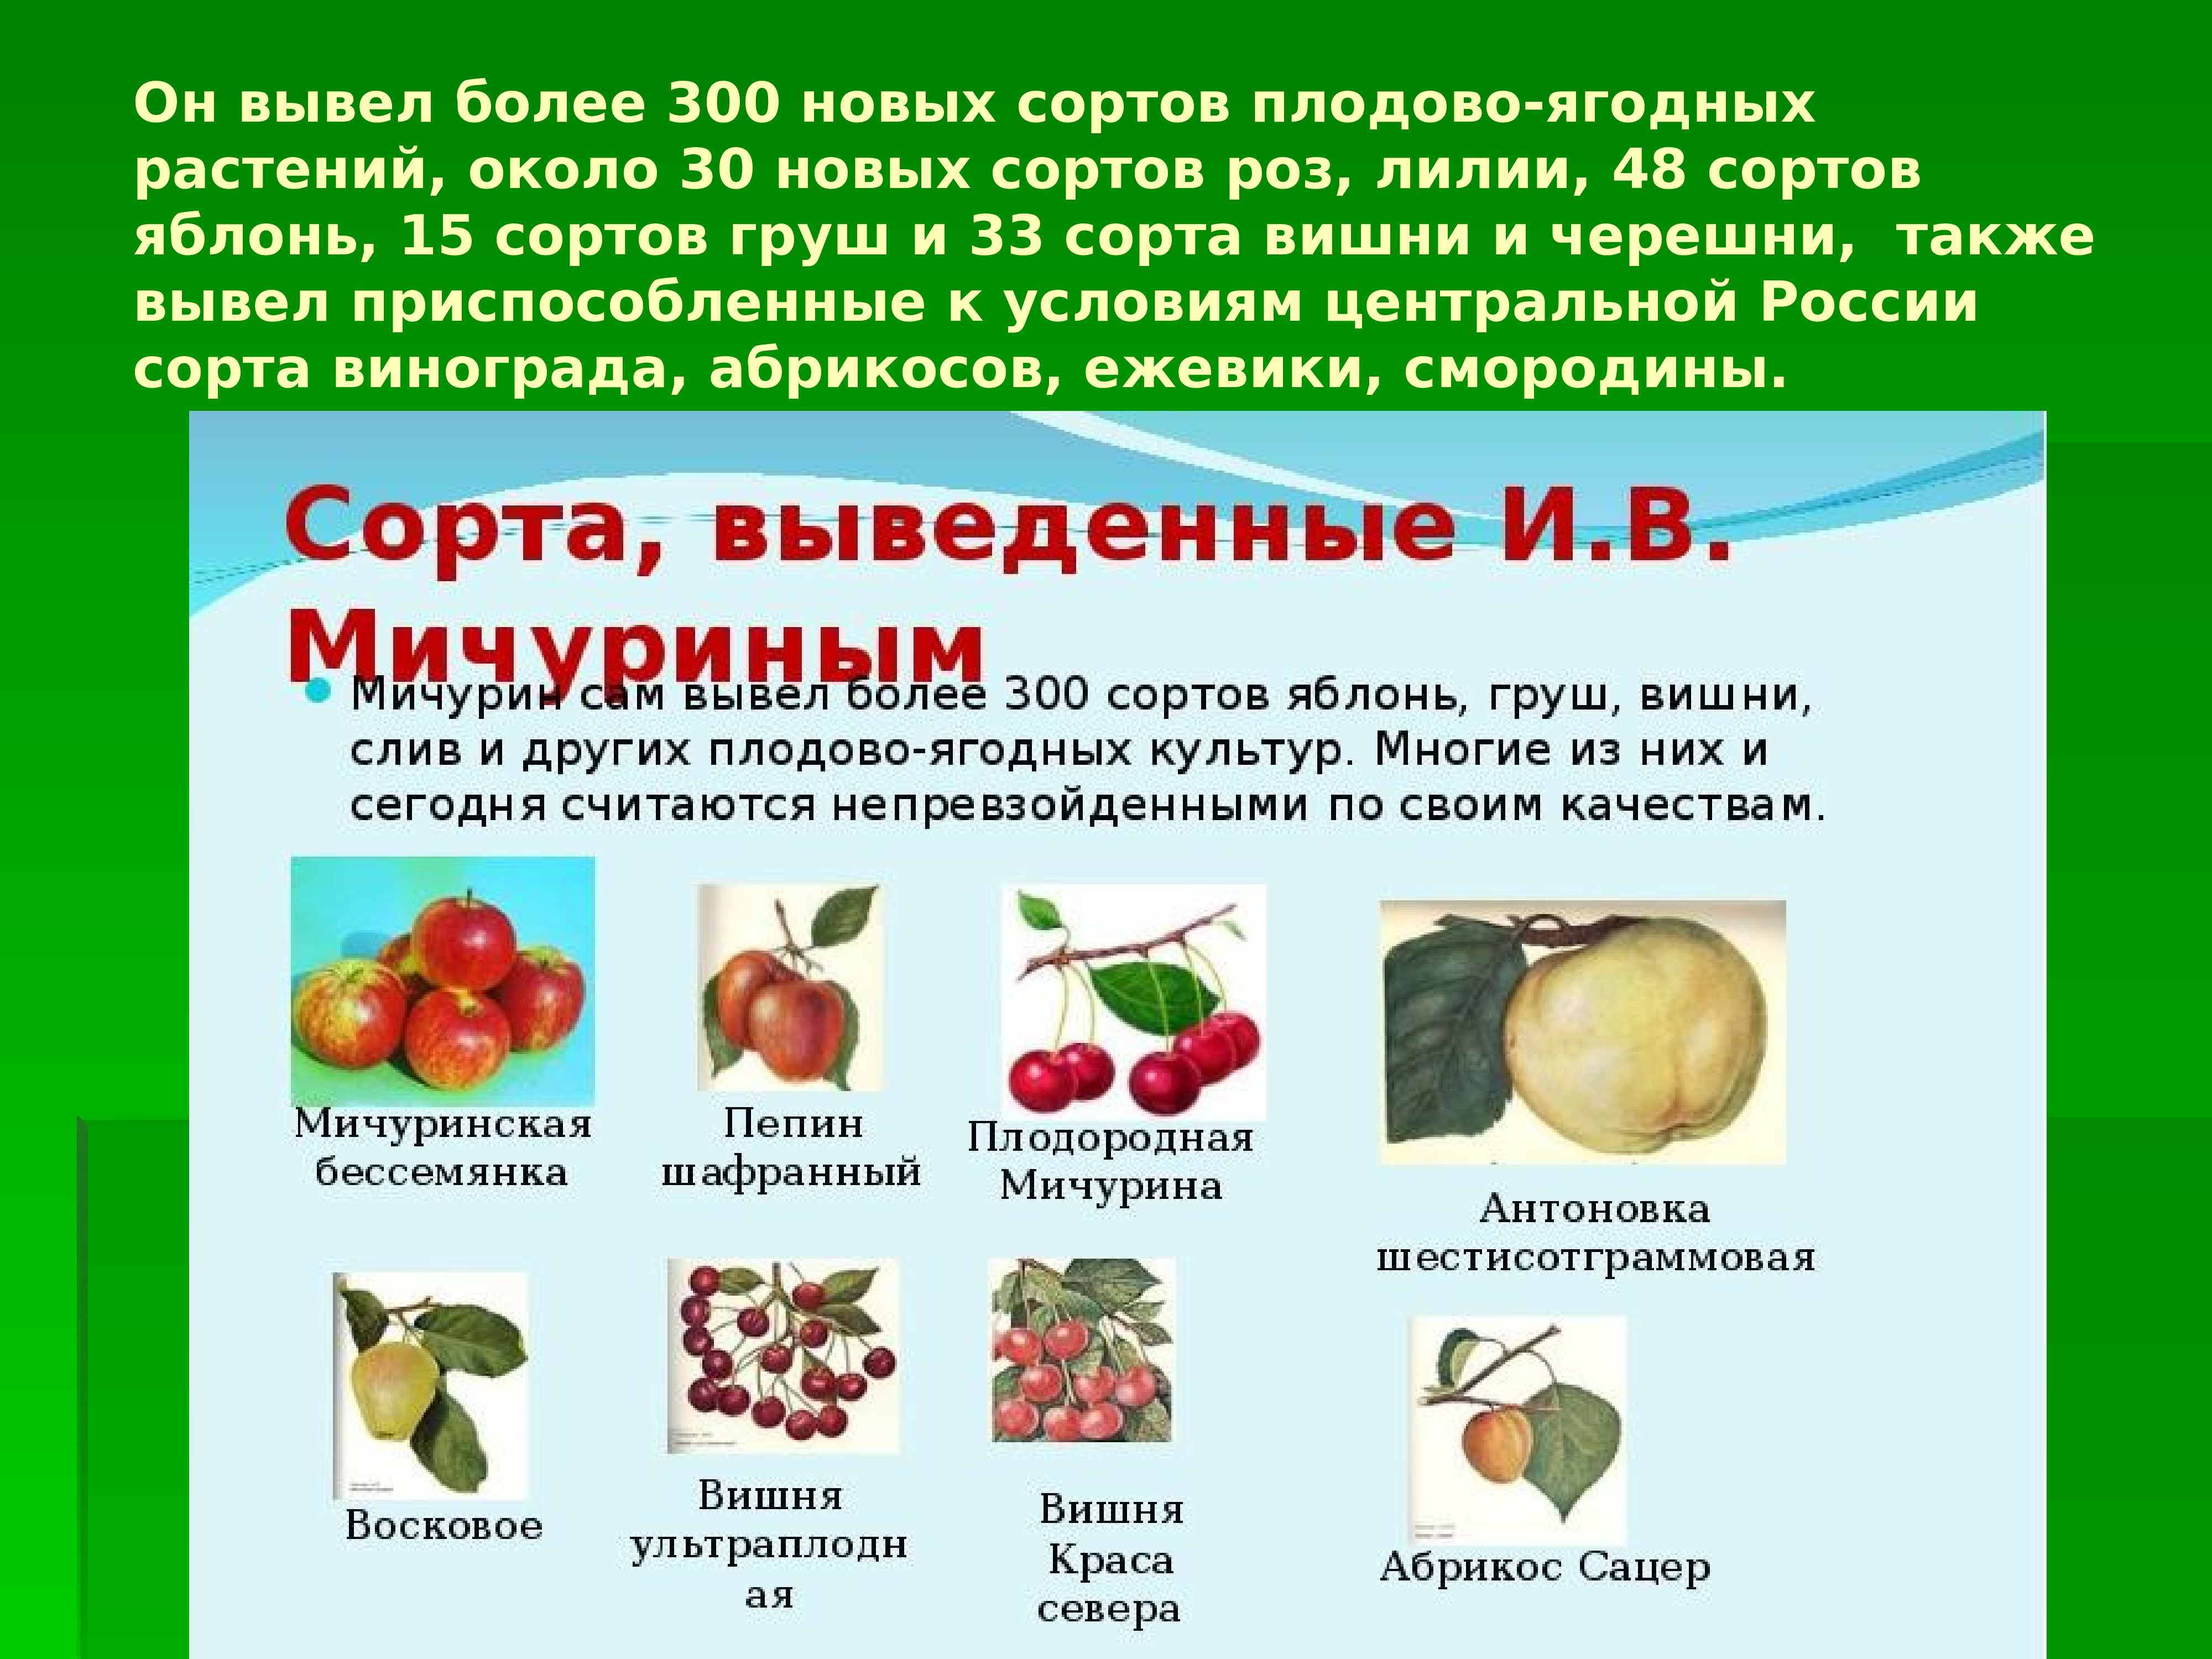 Сорта плодово ягодные культур. Вклад Мичурина в селекцию плодово ягодных культур.